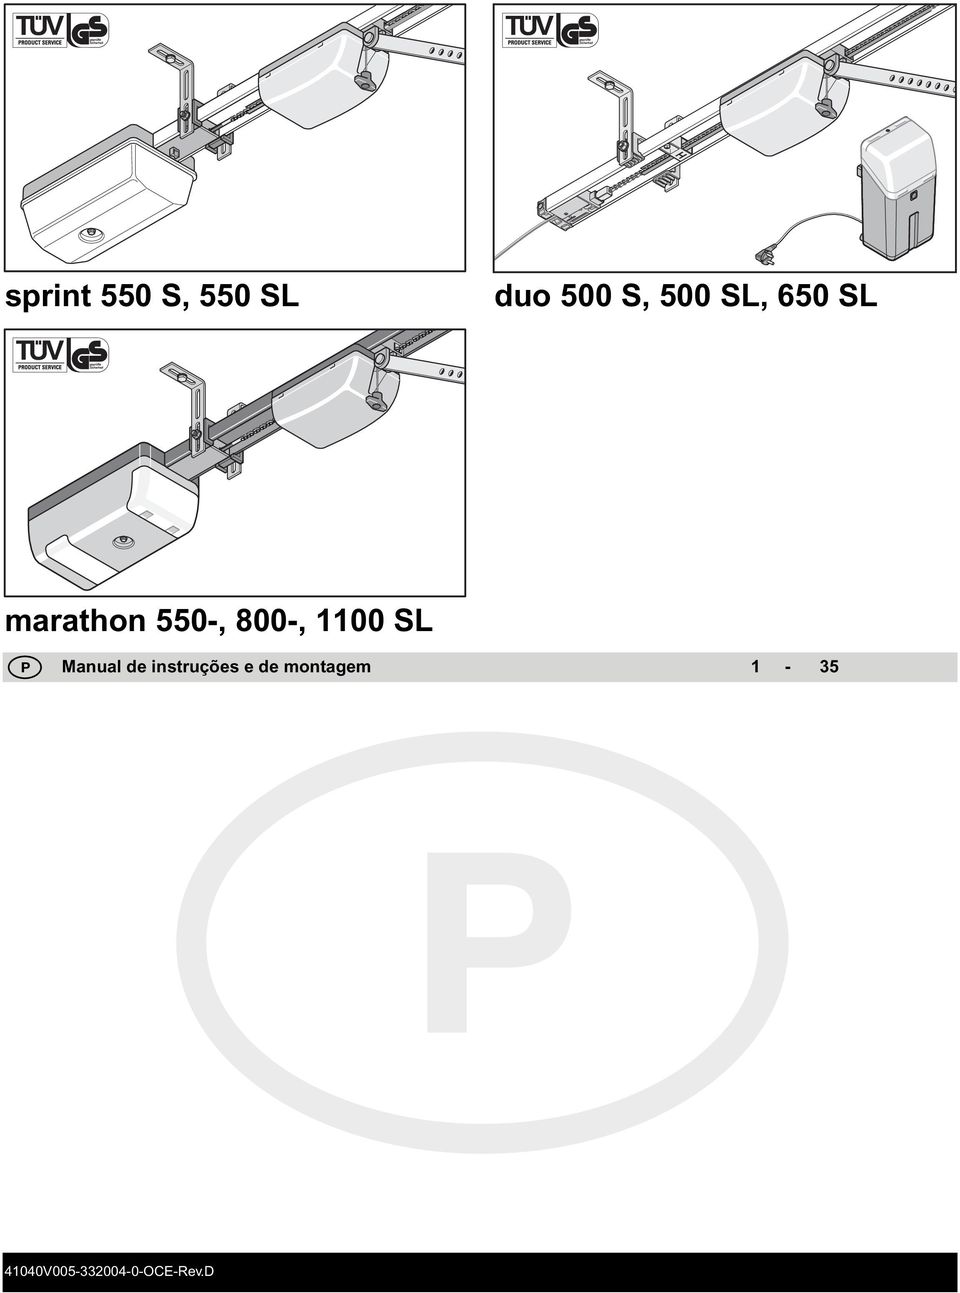 1100 SL P Manual de instruções e de